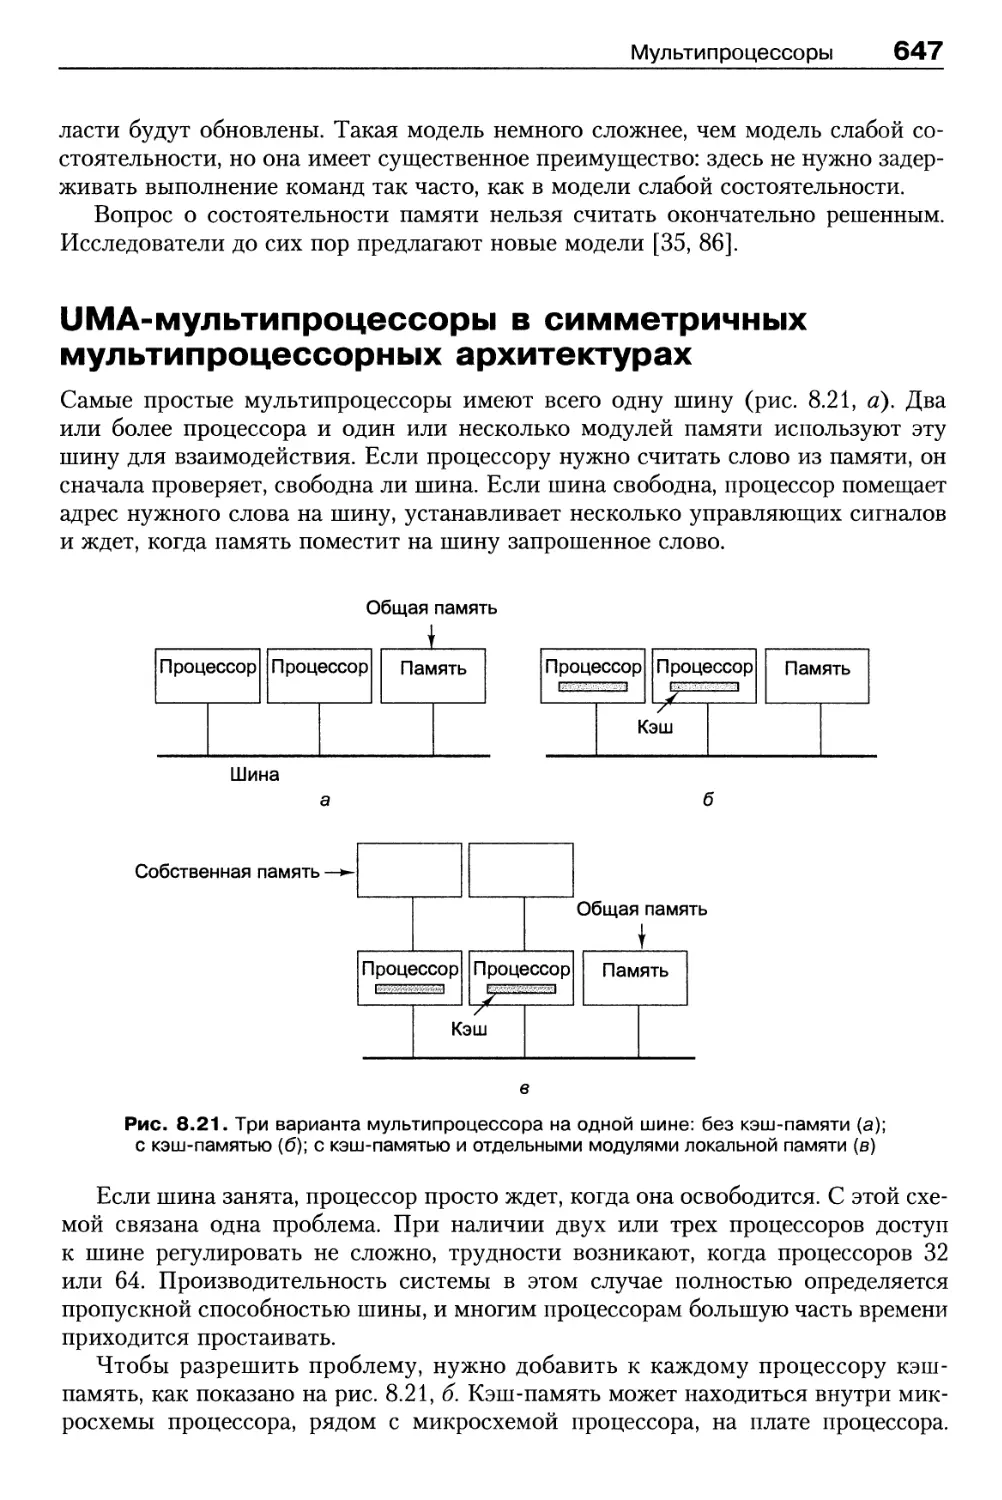 UMA-мультипроцессоры в симметричных мультипроцессорных архитектурах